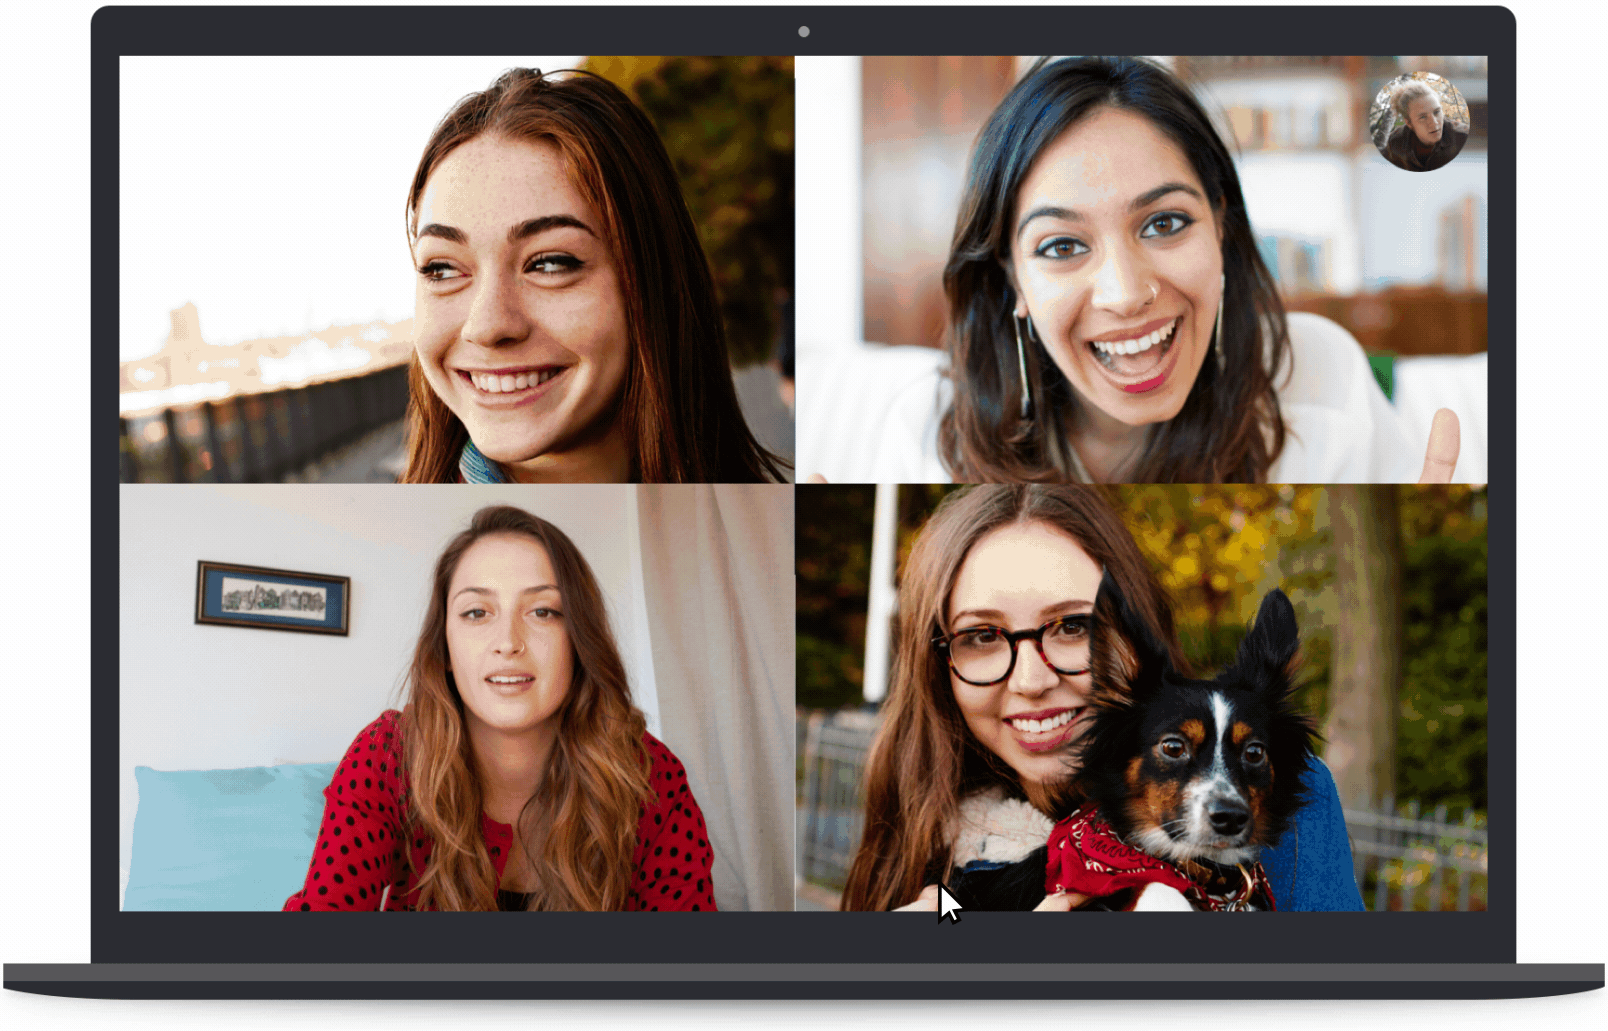 Blur de fundo no Skype (GIF)